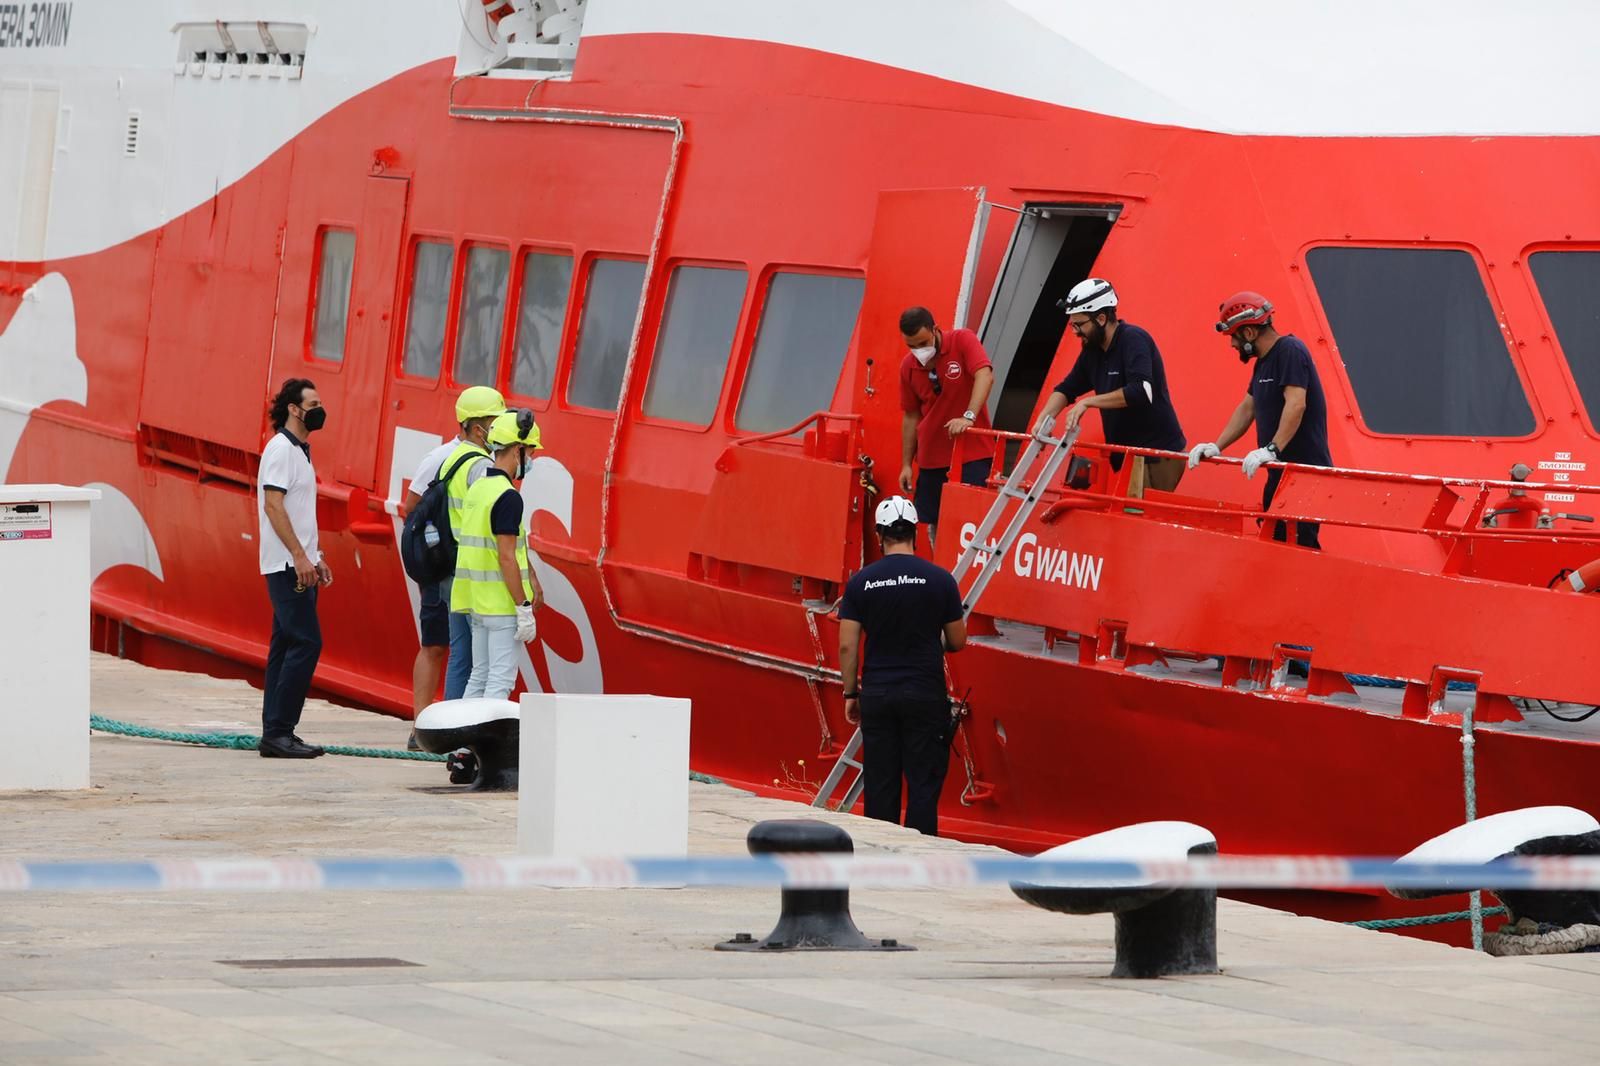 El barco accidentado 'San Gwann' llega al puerto de Ibiza